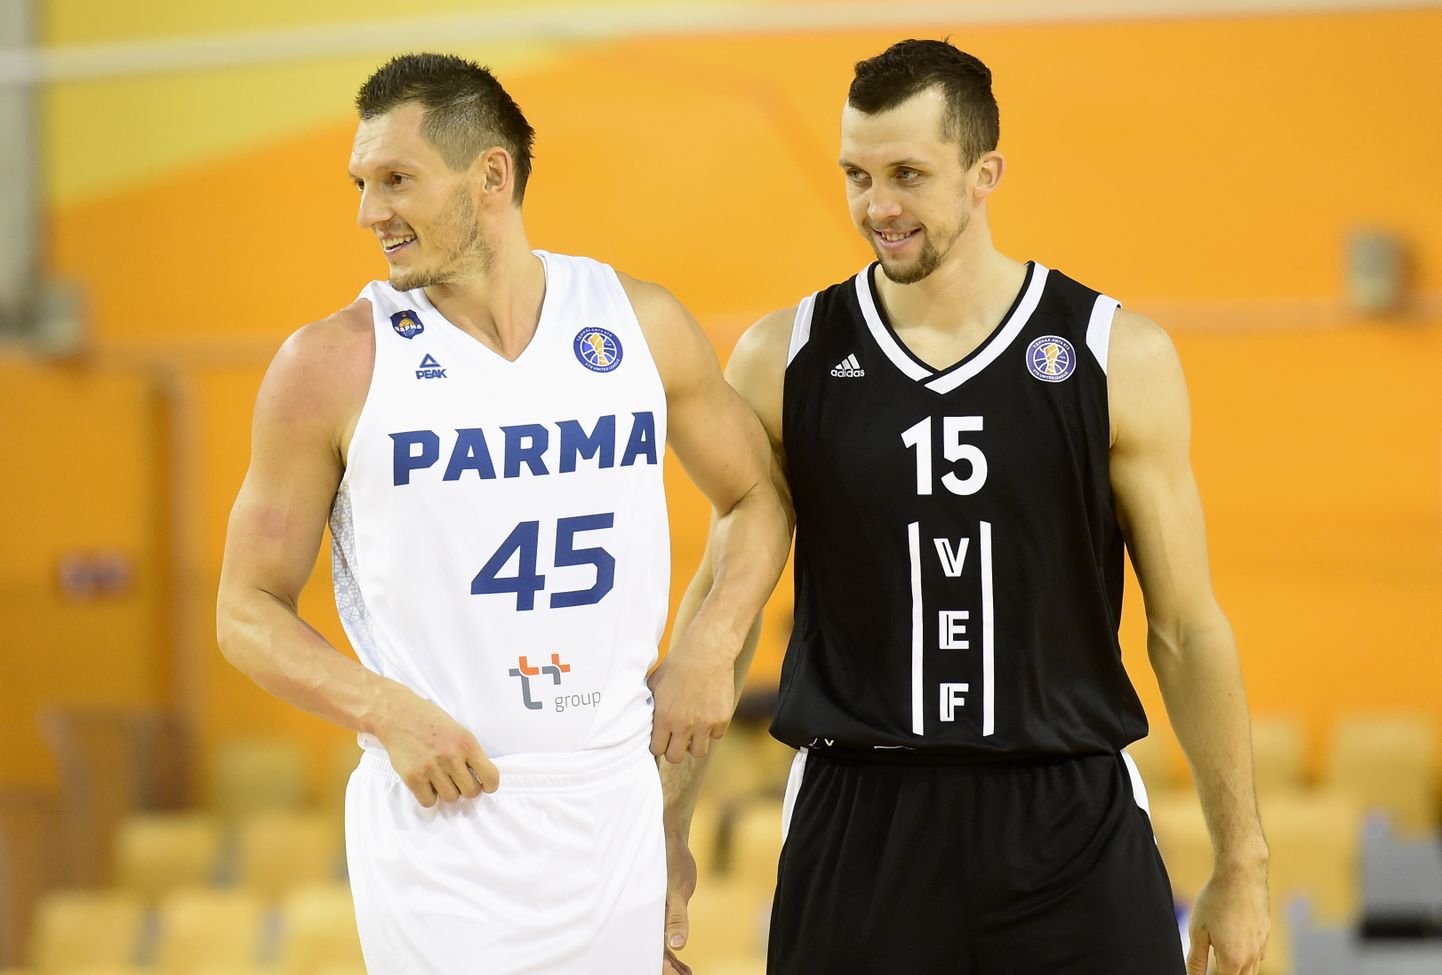 Permas "Parma" spēlētājs Jānis Blūms (nr.45, balts) un "VEF Rīga" spēlētājs Artis Ate (nr.15, melns) VTB Vienotās līgas spēlē basketbolā "Elektrum" Olimpiskajā centrā, kurā tiekas "VEF Rīga" un Permas "Parma" komandas.